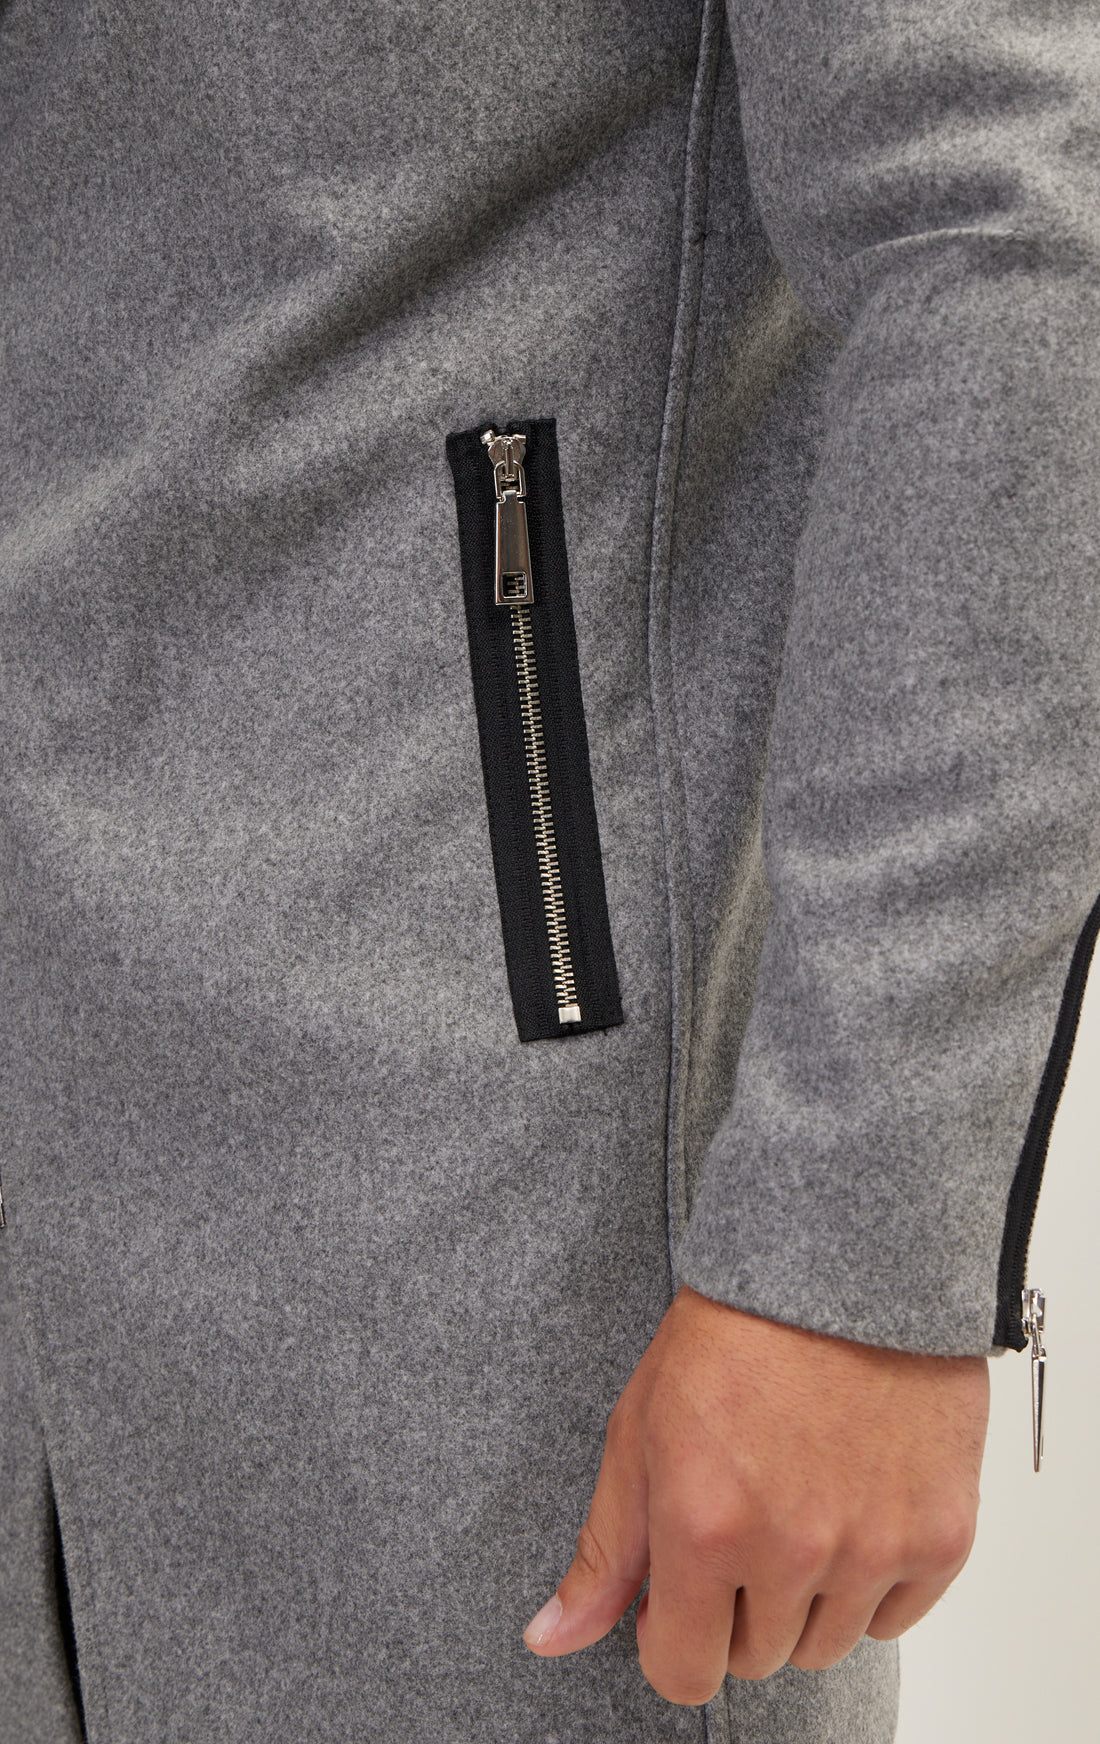 Asymmetrical Zipper Closure Coat - Grey